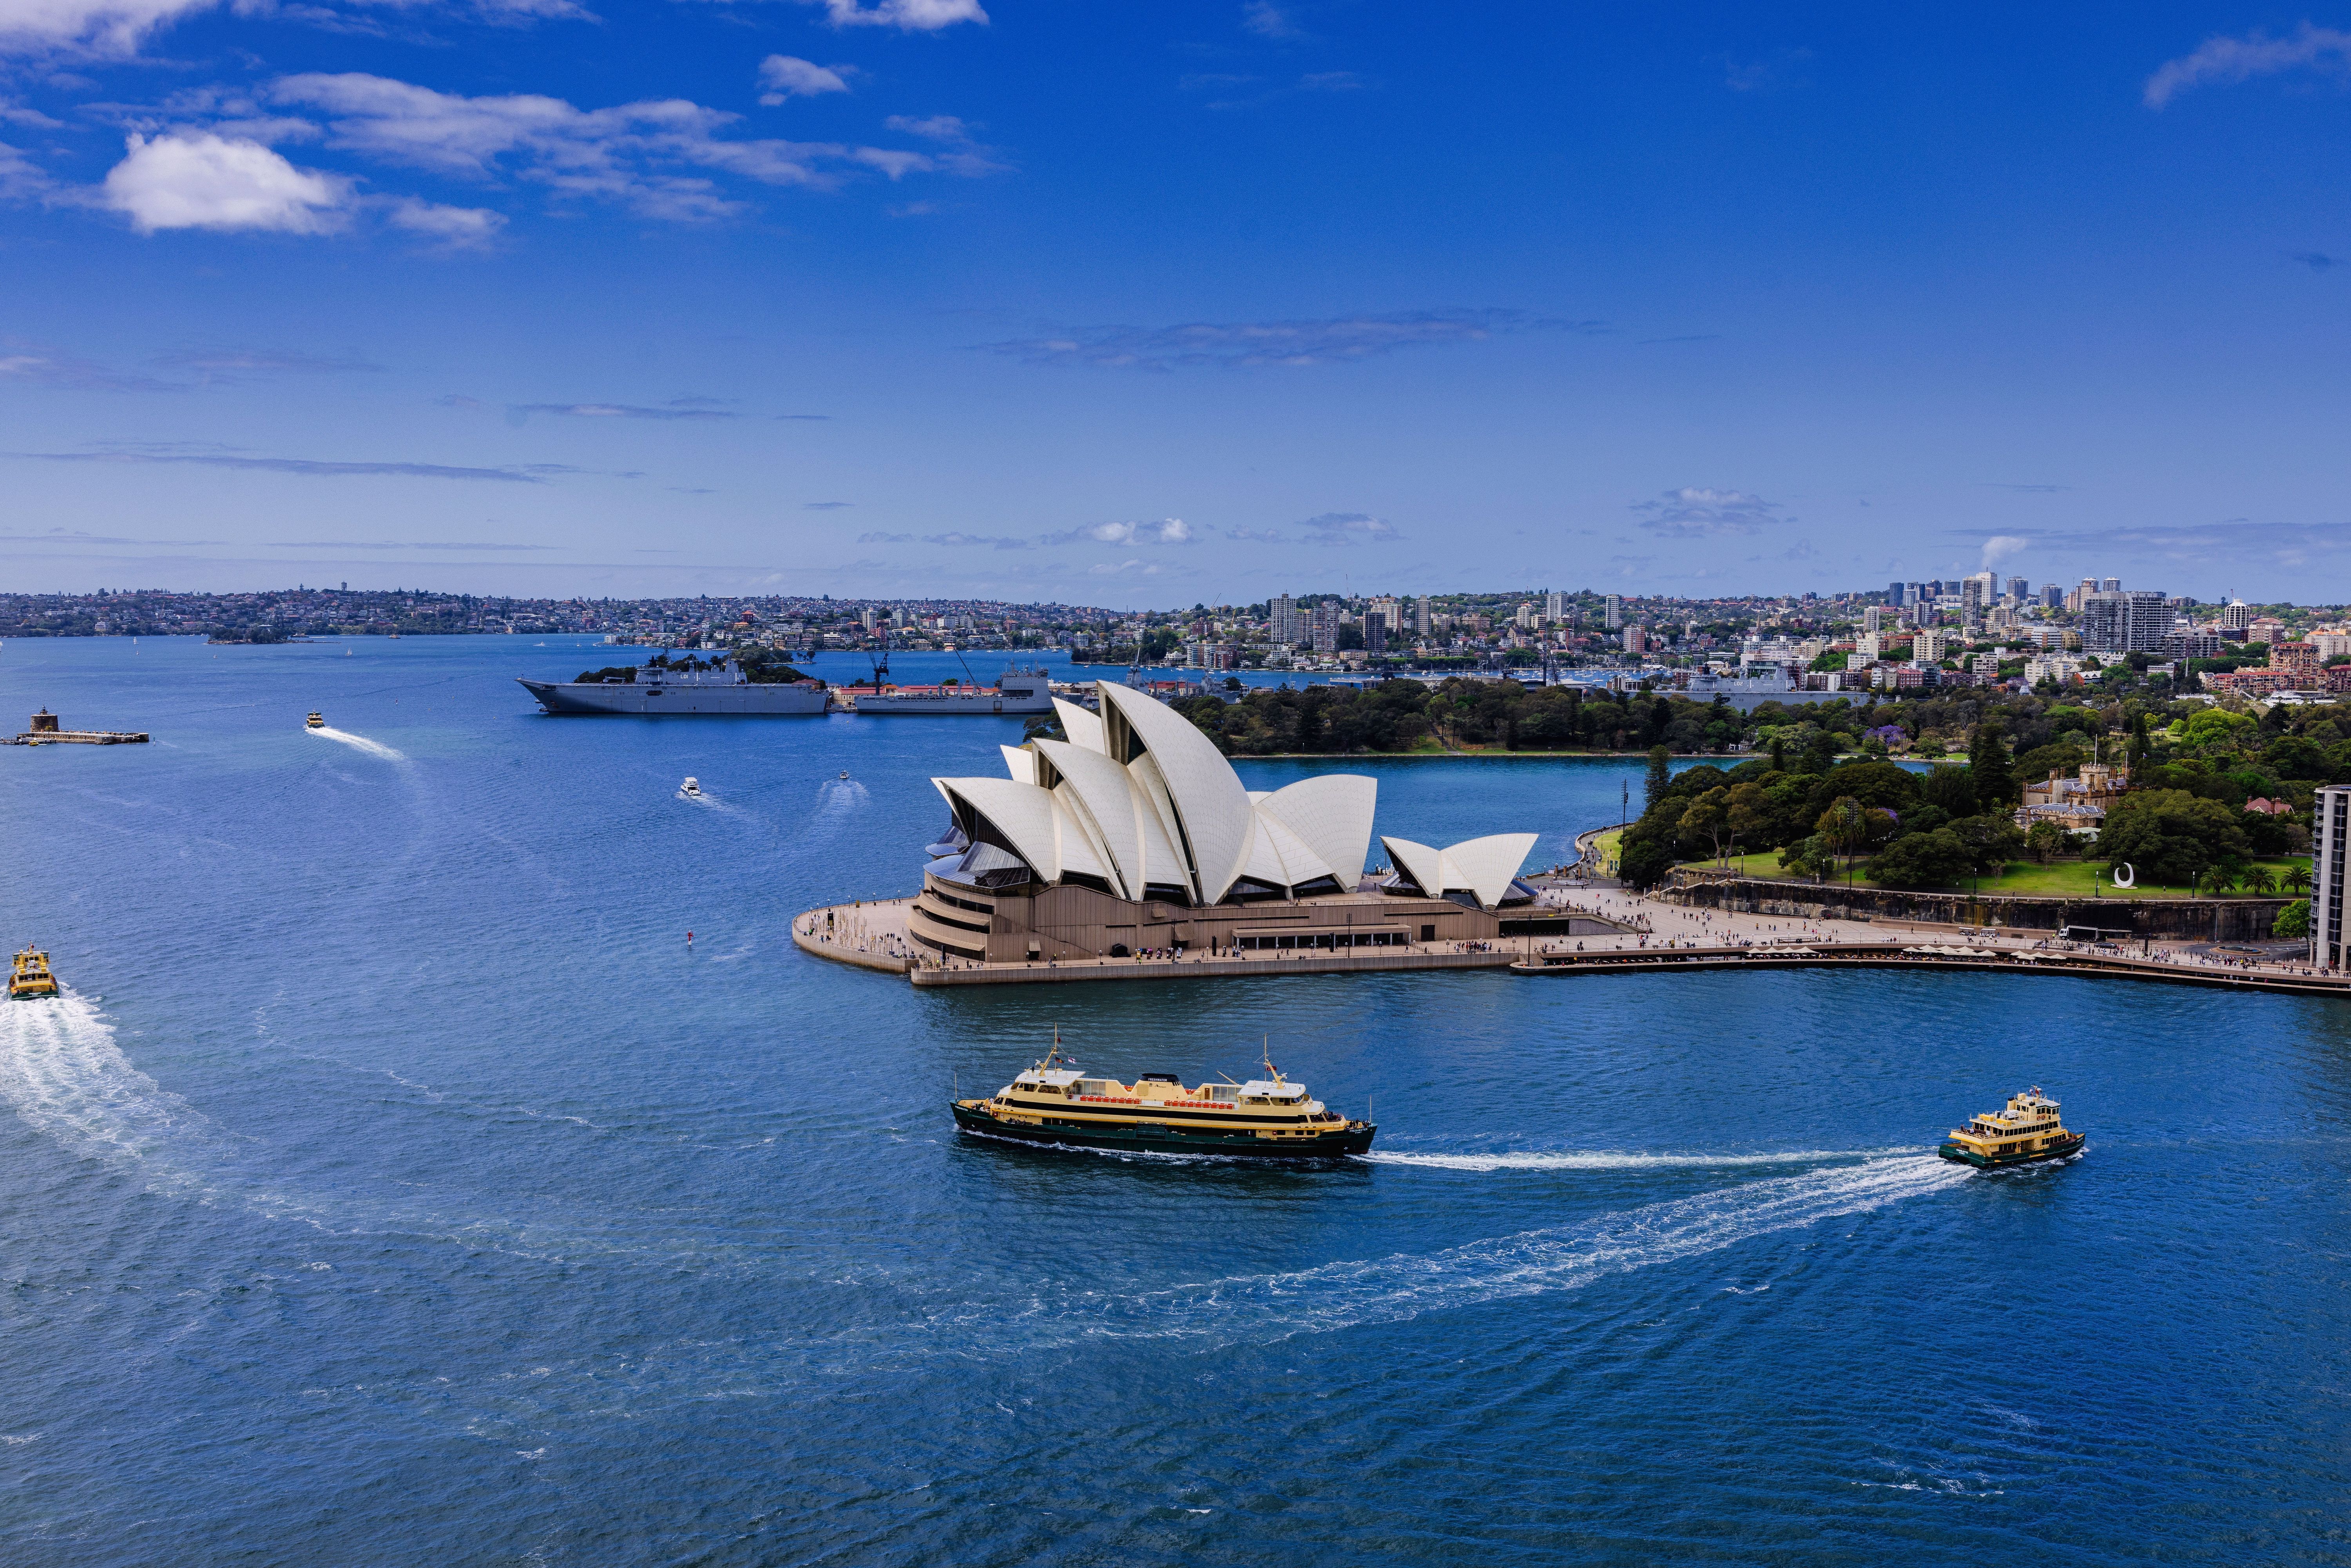 Sydney hat es 2023 auf Platz 3 (EIU) und Platz 6 (Mercer) der lebenswertesten Städte geschafft. Obwohl nicht Hauptstadt, hat sich die Stadt zur kulturellen, politischen und wirtschaftlichen Metropole Neuseelands entwickelt. Hier kommen nicht nur Architektur-Liebhaber, sondern auch Surfer auf ihre Kosten: Allein auf dem Stadtgebiet gibt es über 70 verschiedene Strände.